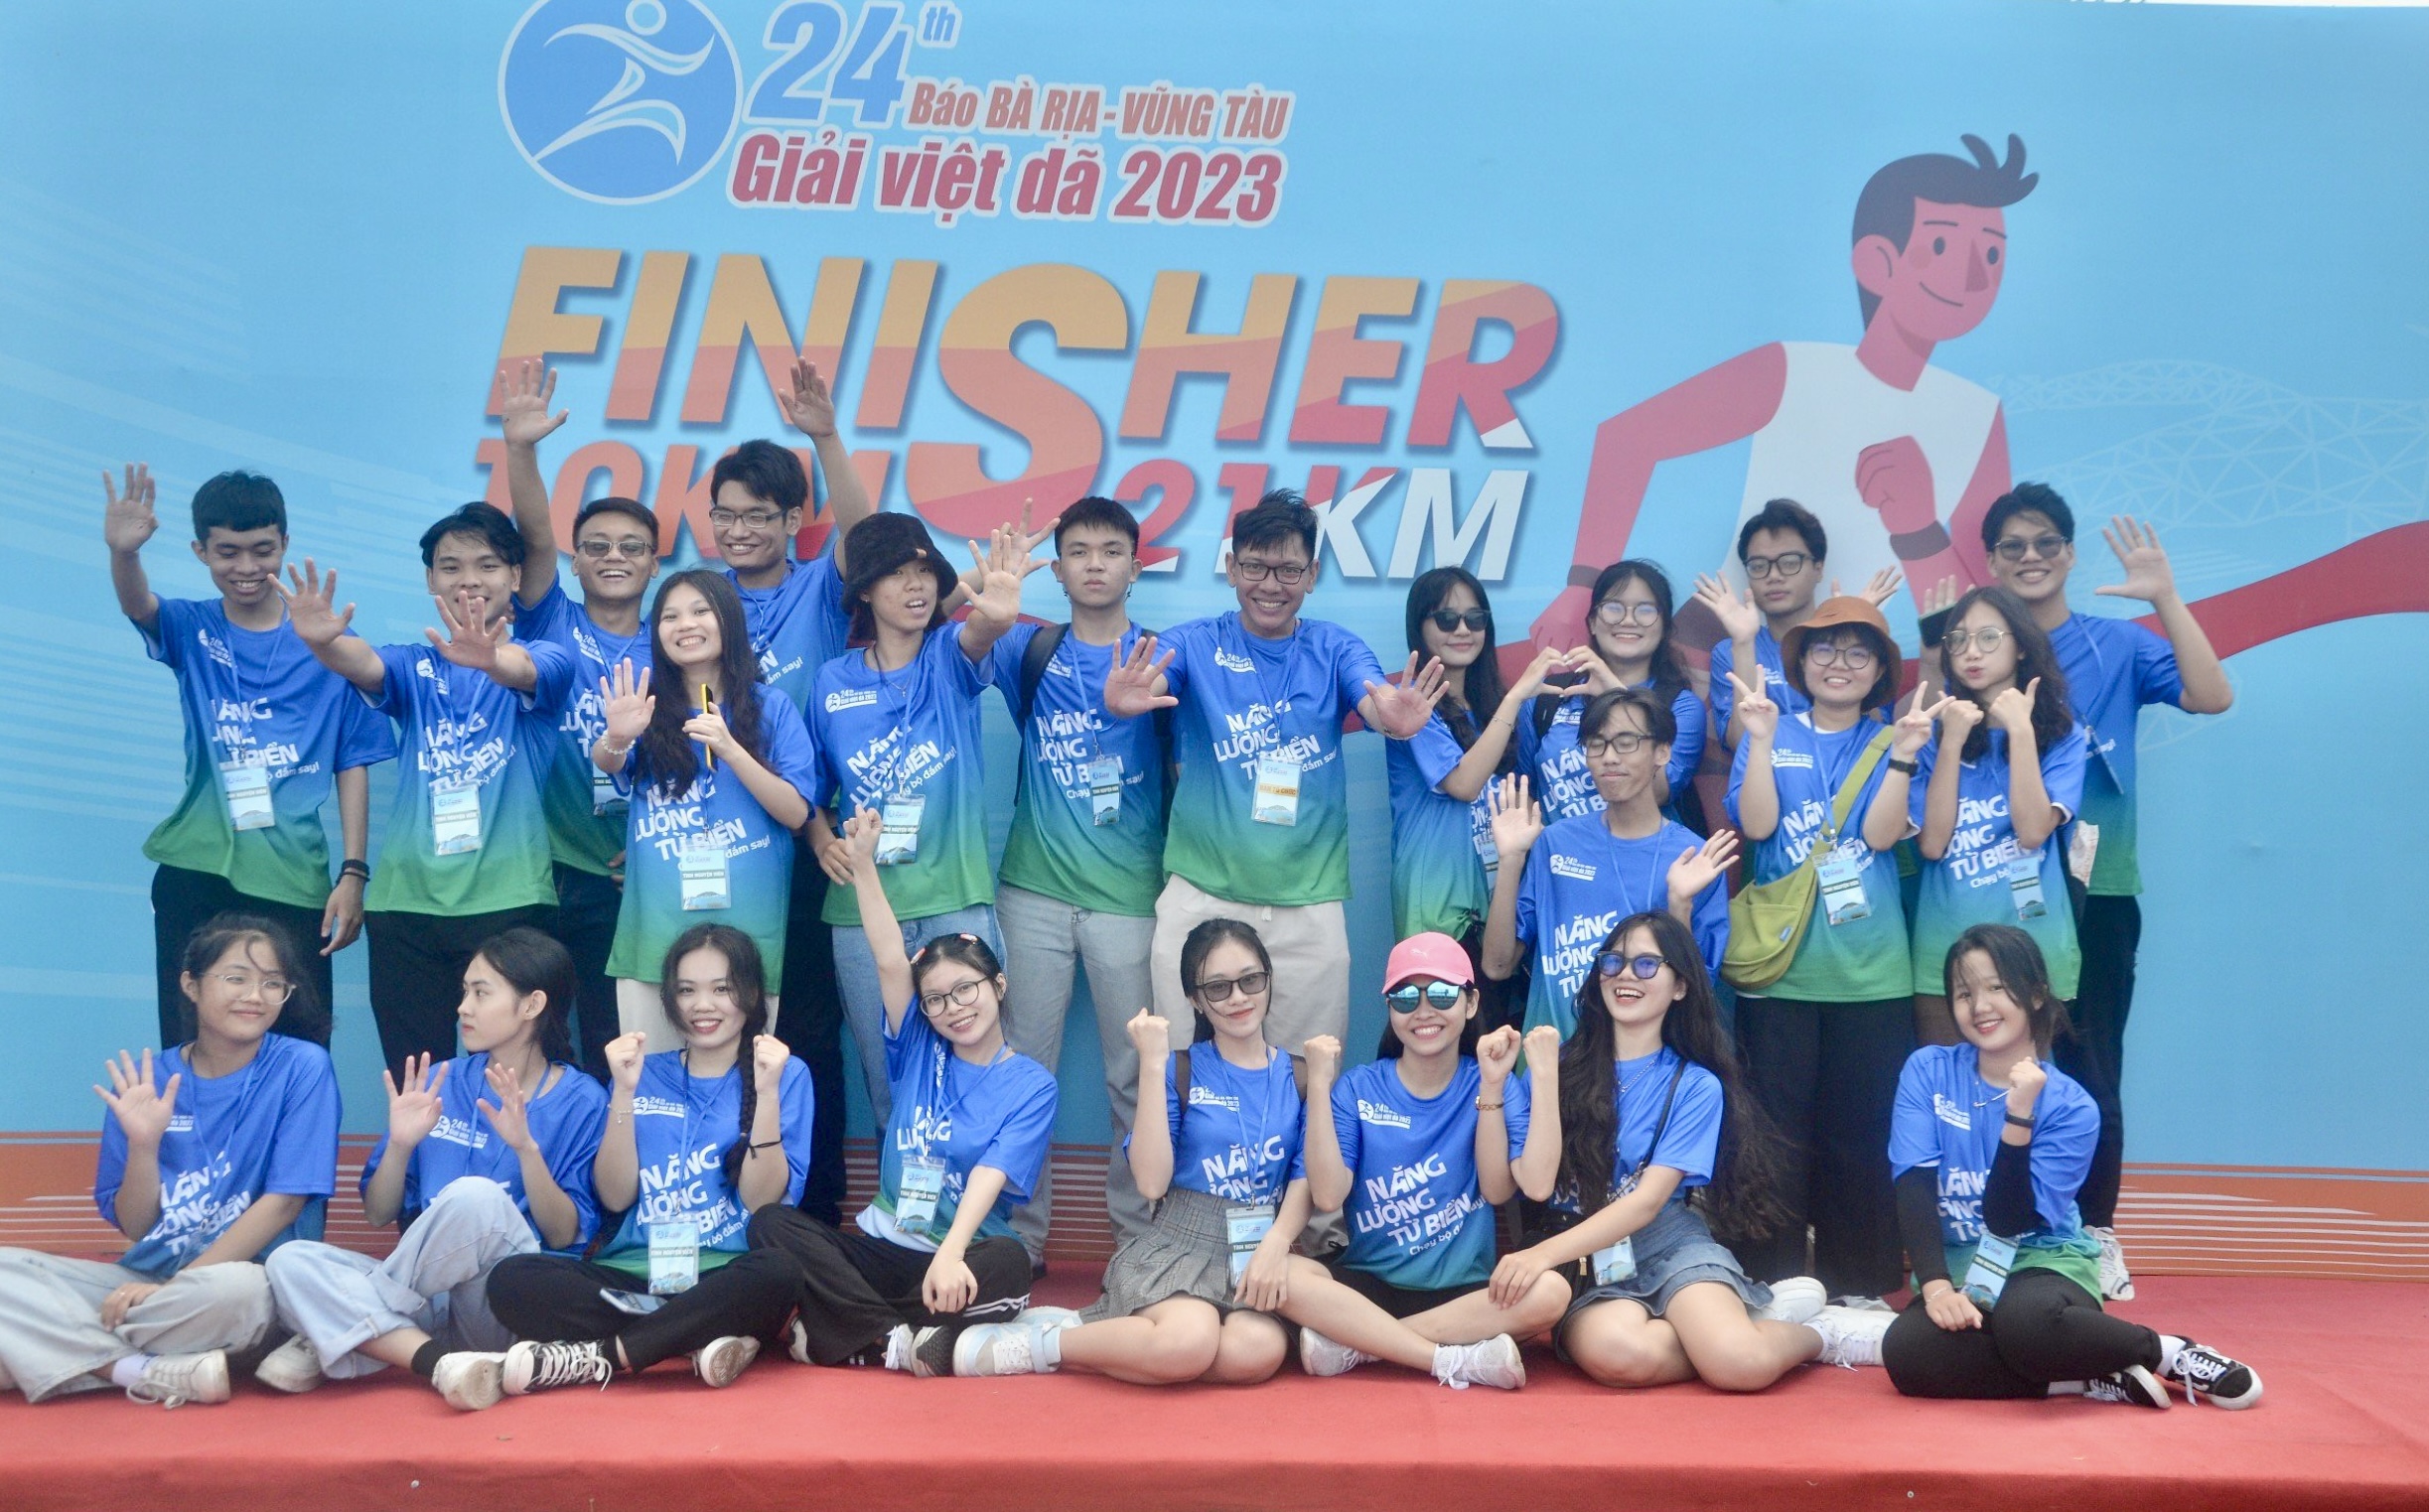 Giải Việt dã Báo Bà Rịa - Vũng Tàu lần thứ 25: Sẵn sàng tiếp sức cho các runner